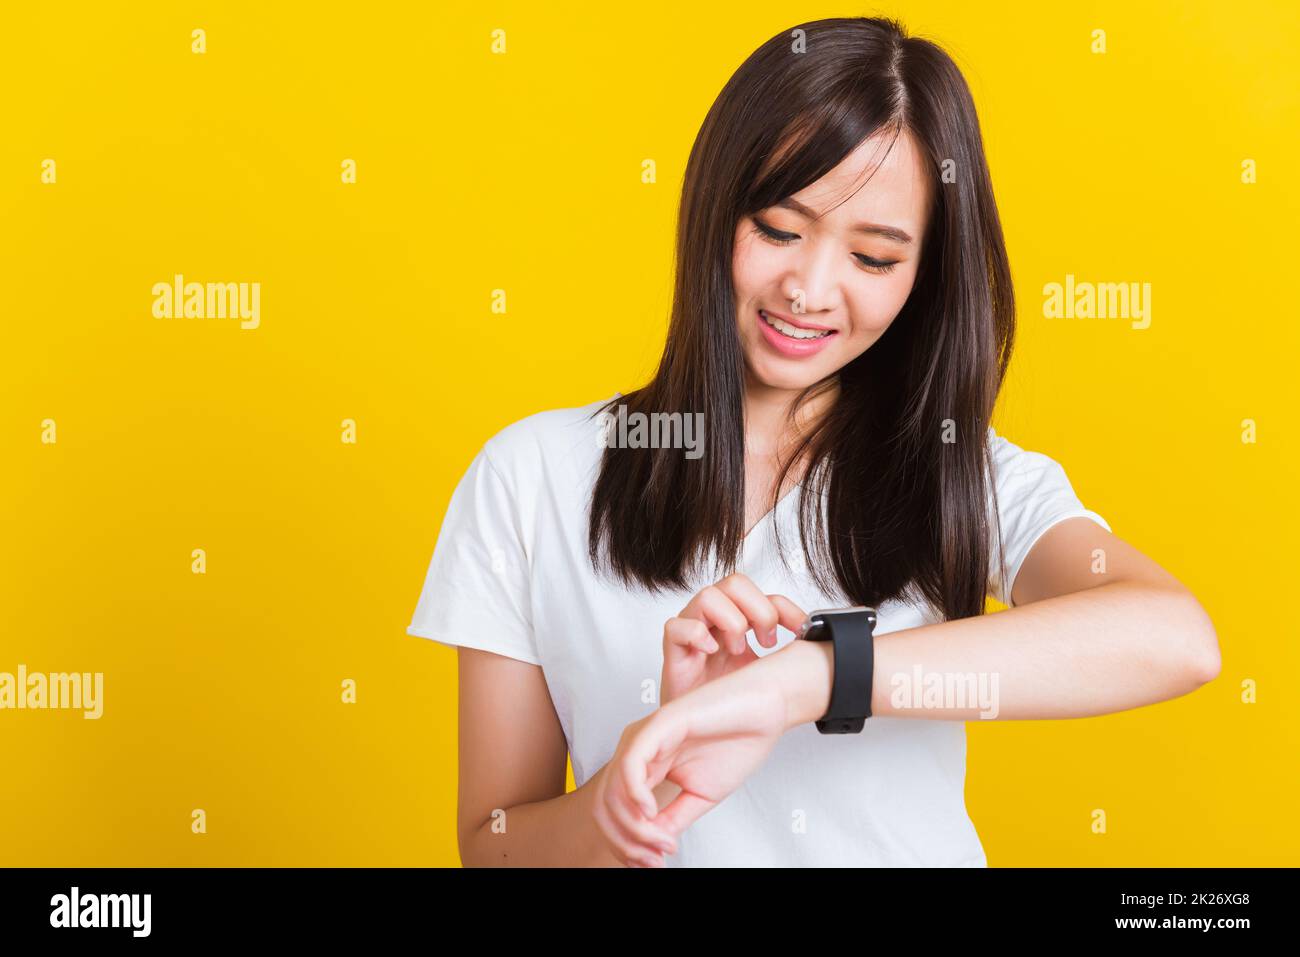 Junge Frau, die lächelt und mit dem Finger auf ihre intelligente Armbanduhr zeigt Stockfoto